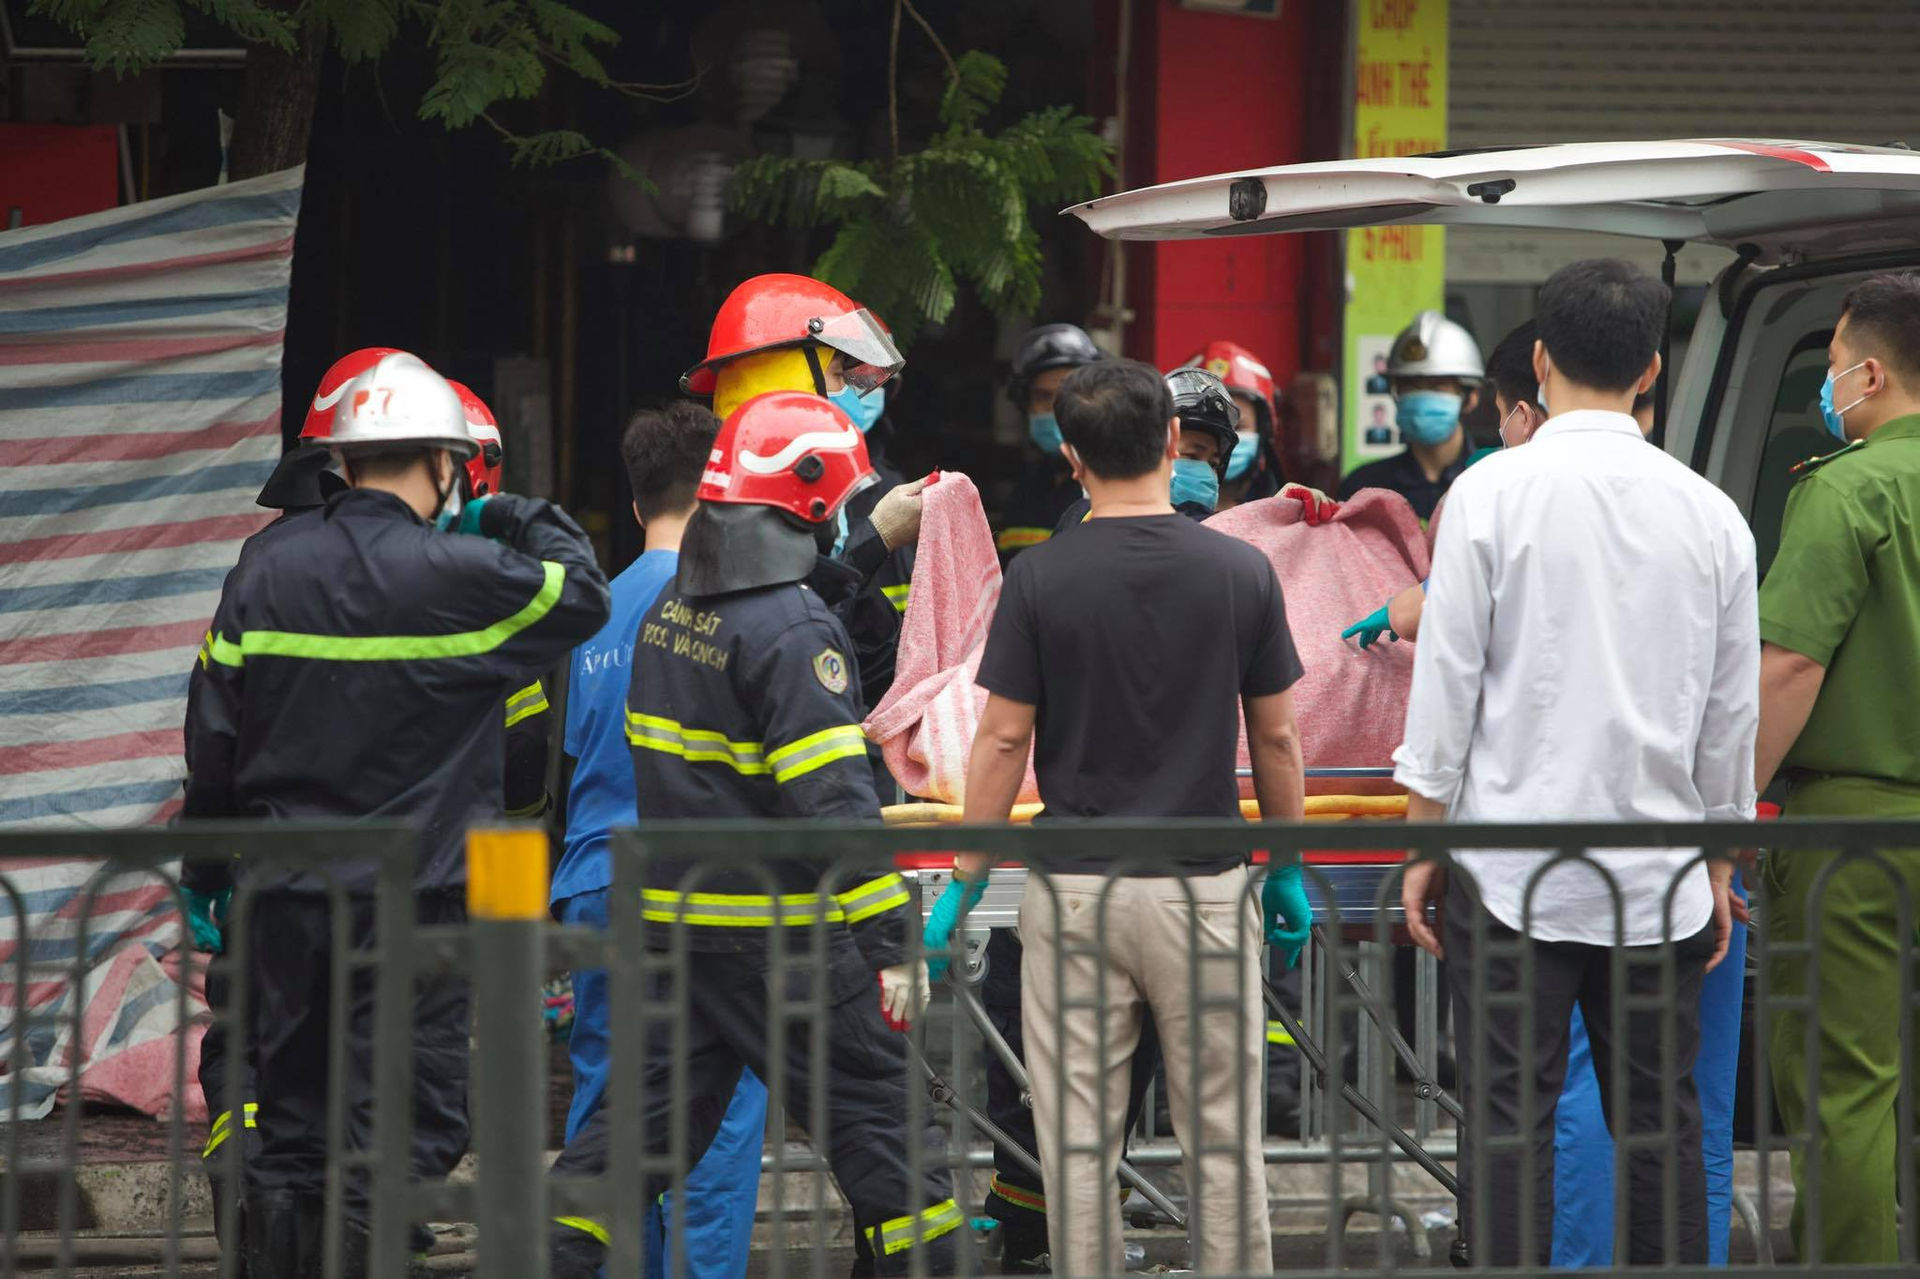 Hà Nội: Cháy lớn ở cửa hàng đồ sơ sinh, 4 người trong gia đình tử vong - 6